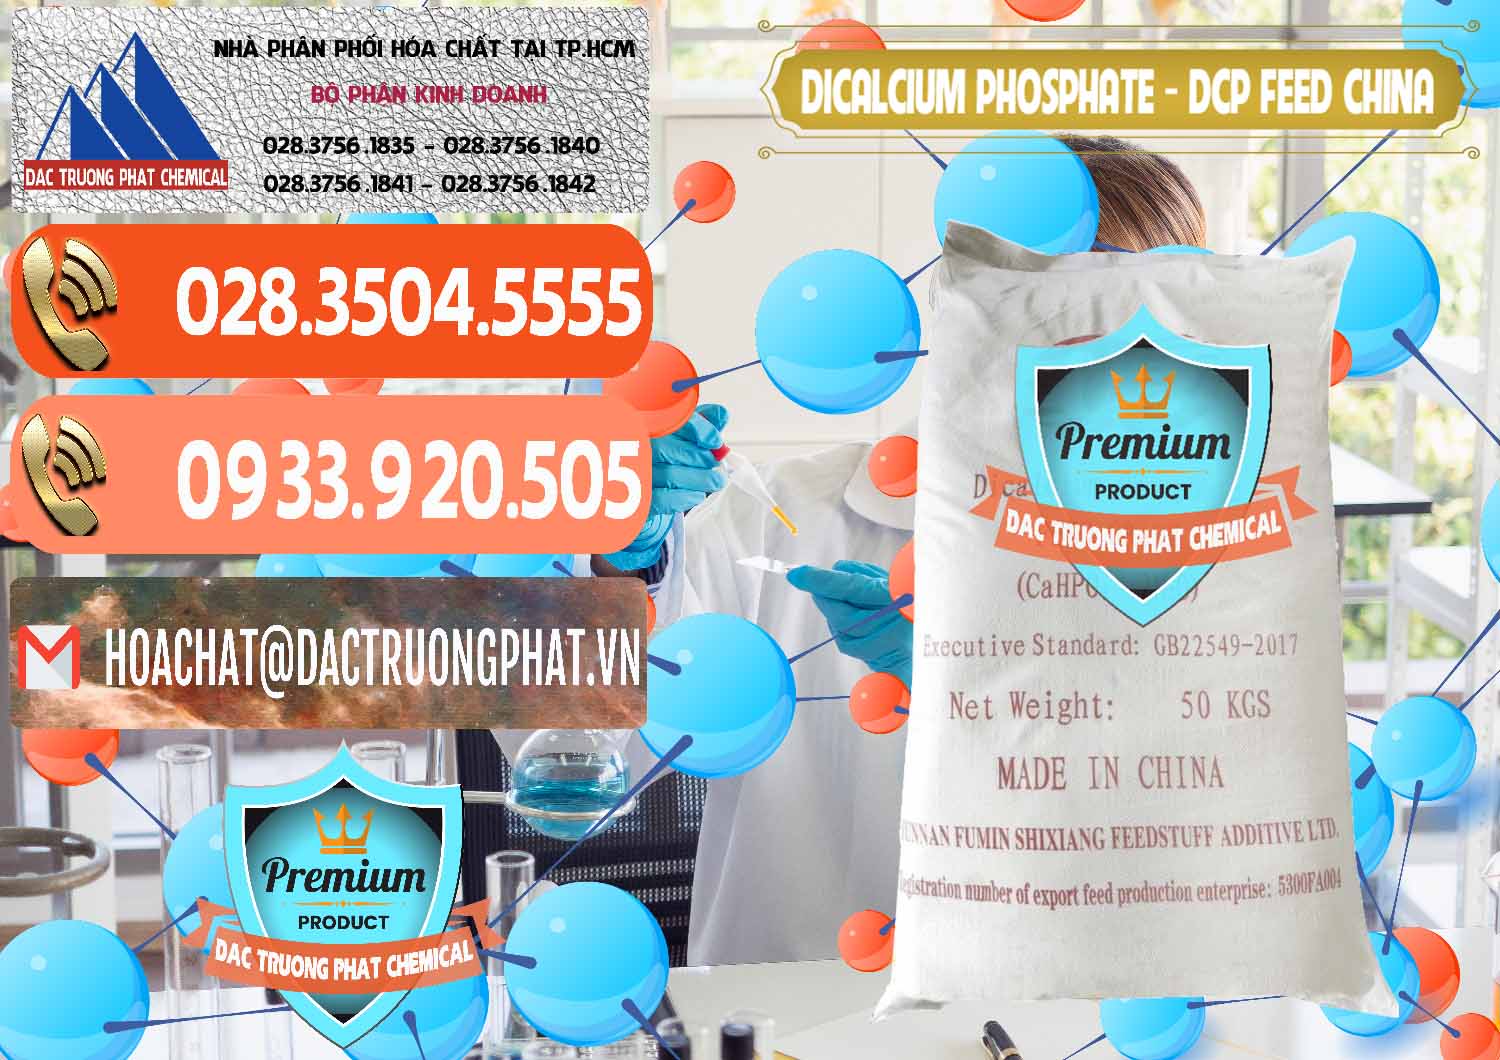 Nơi kinh doanh và bán Dicalcium Phosphate - DCP Feed Grade Trung Quốc China - 0296 - Cty chuyên phân phối _ kinh doanh hóa chất tại TP.HCM - hoachatmientay.com